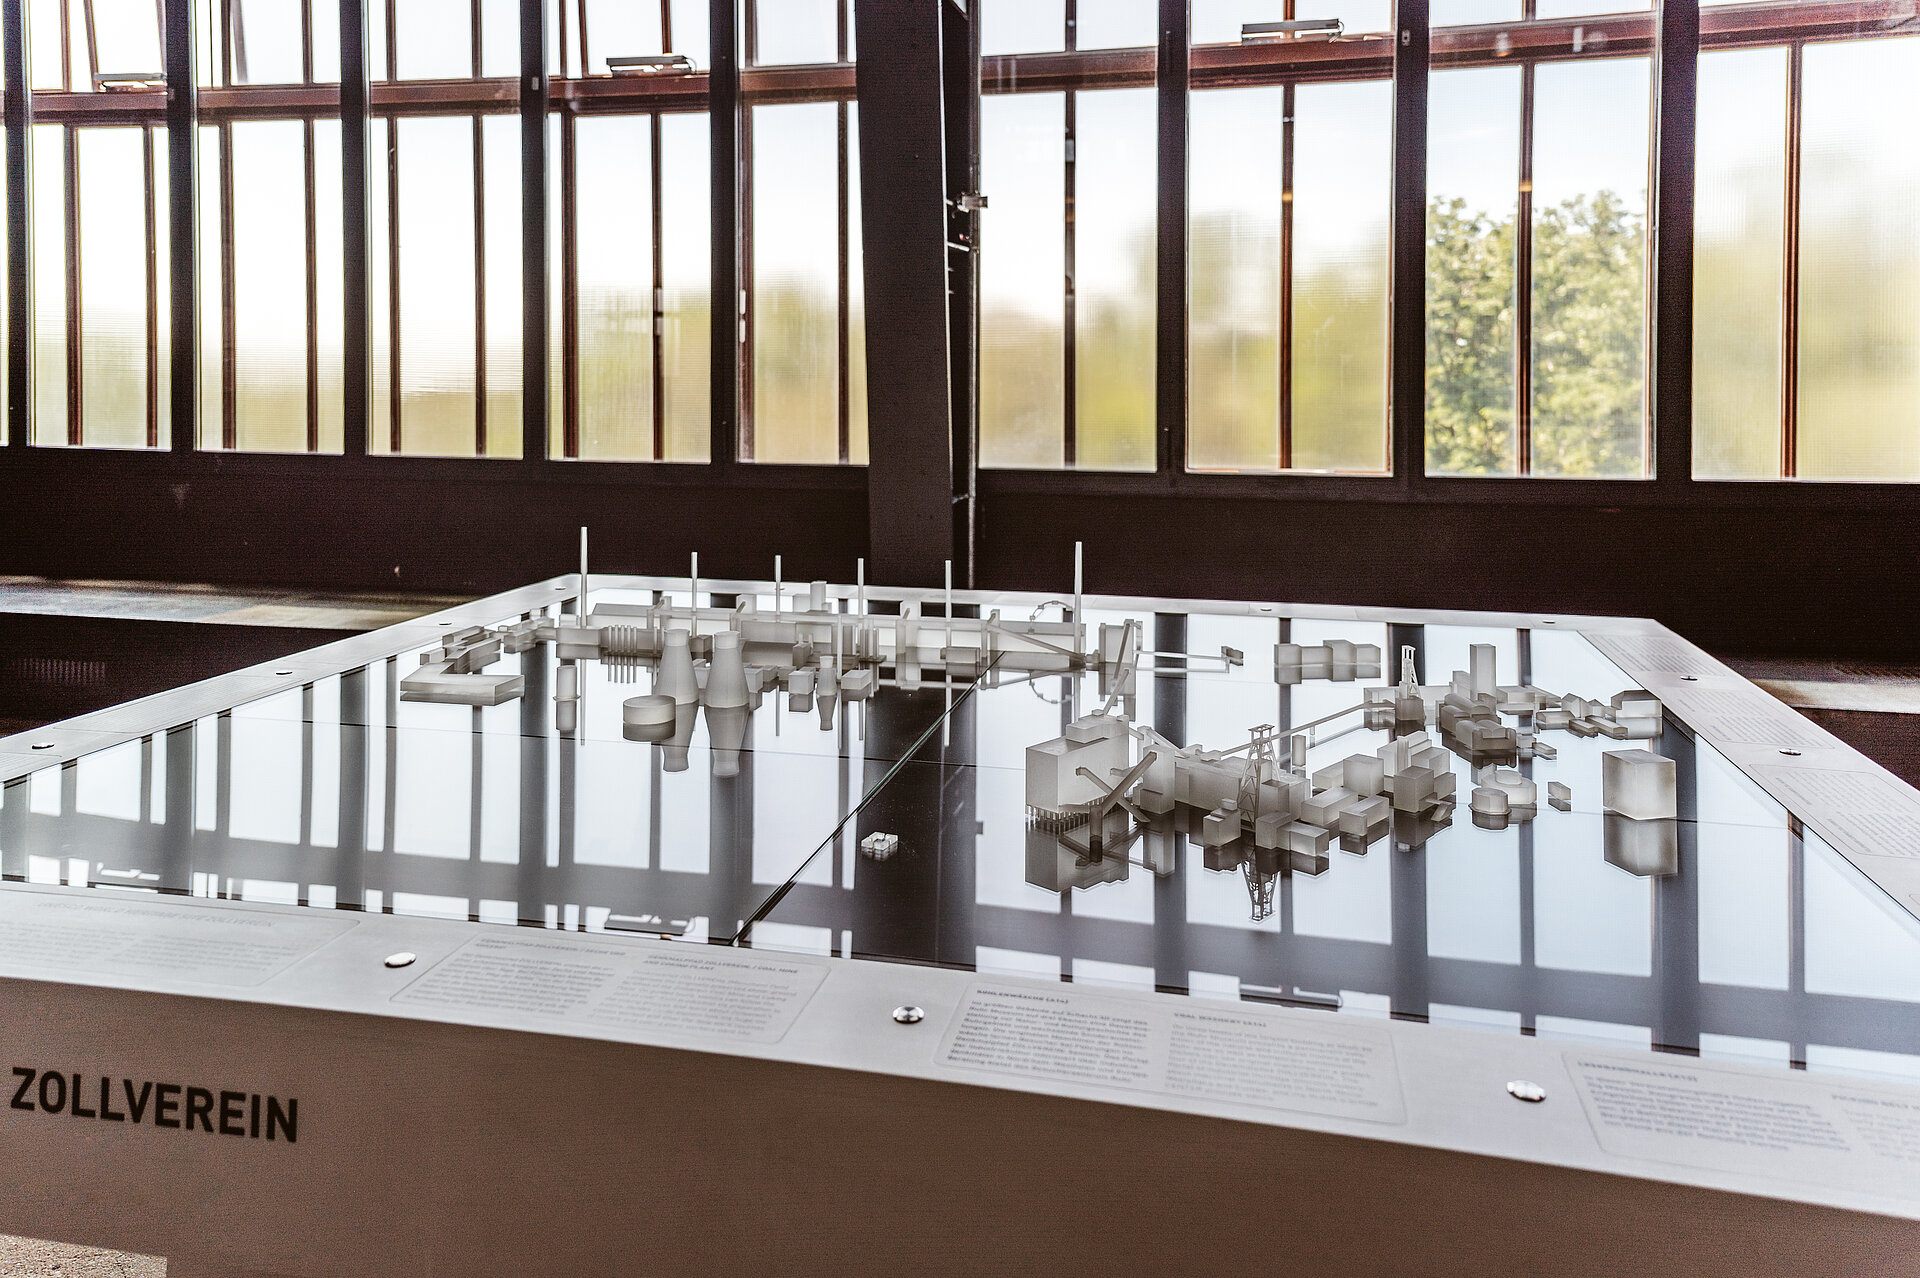 Das Zollverein-Gelände in einem Modell, das im Besucherzentrum ausgestellt ist.